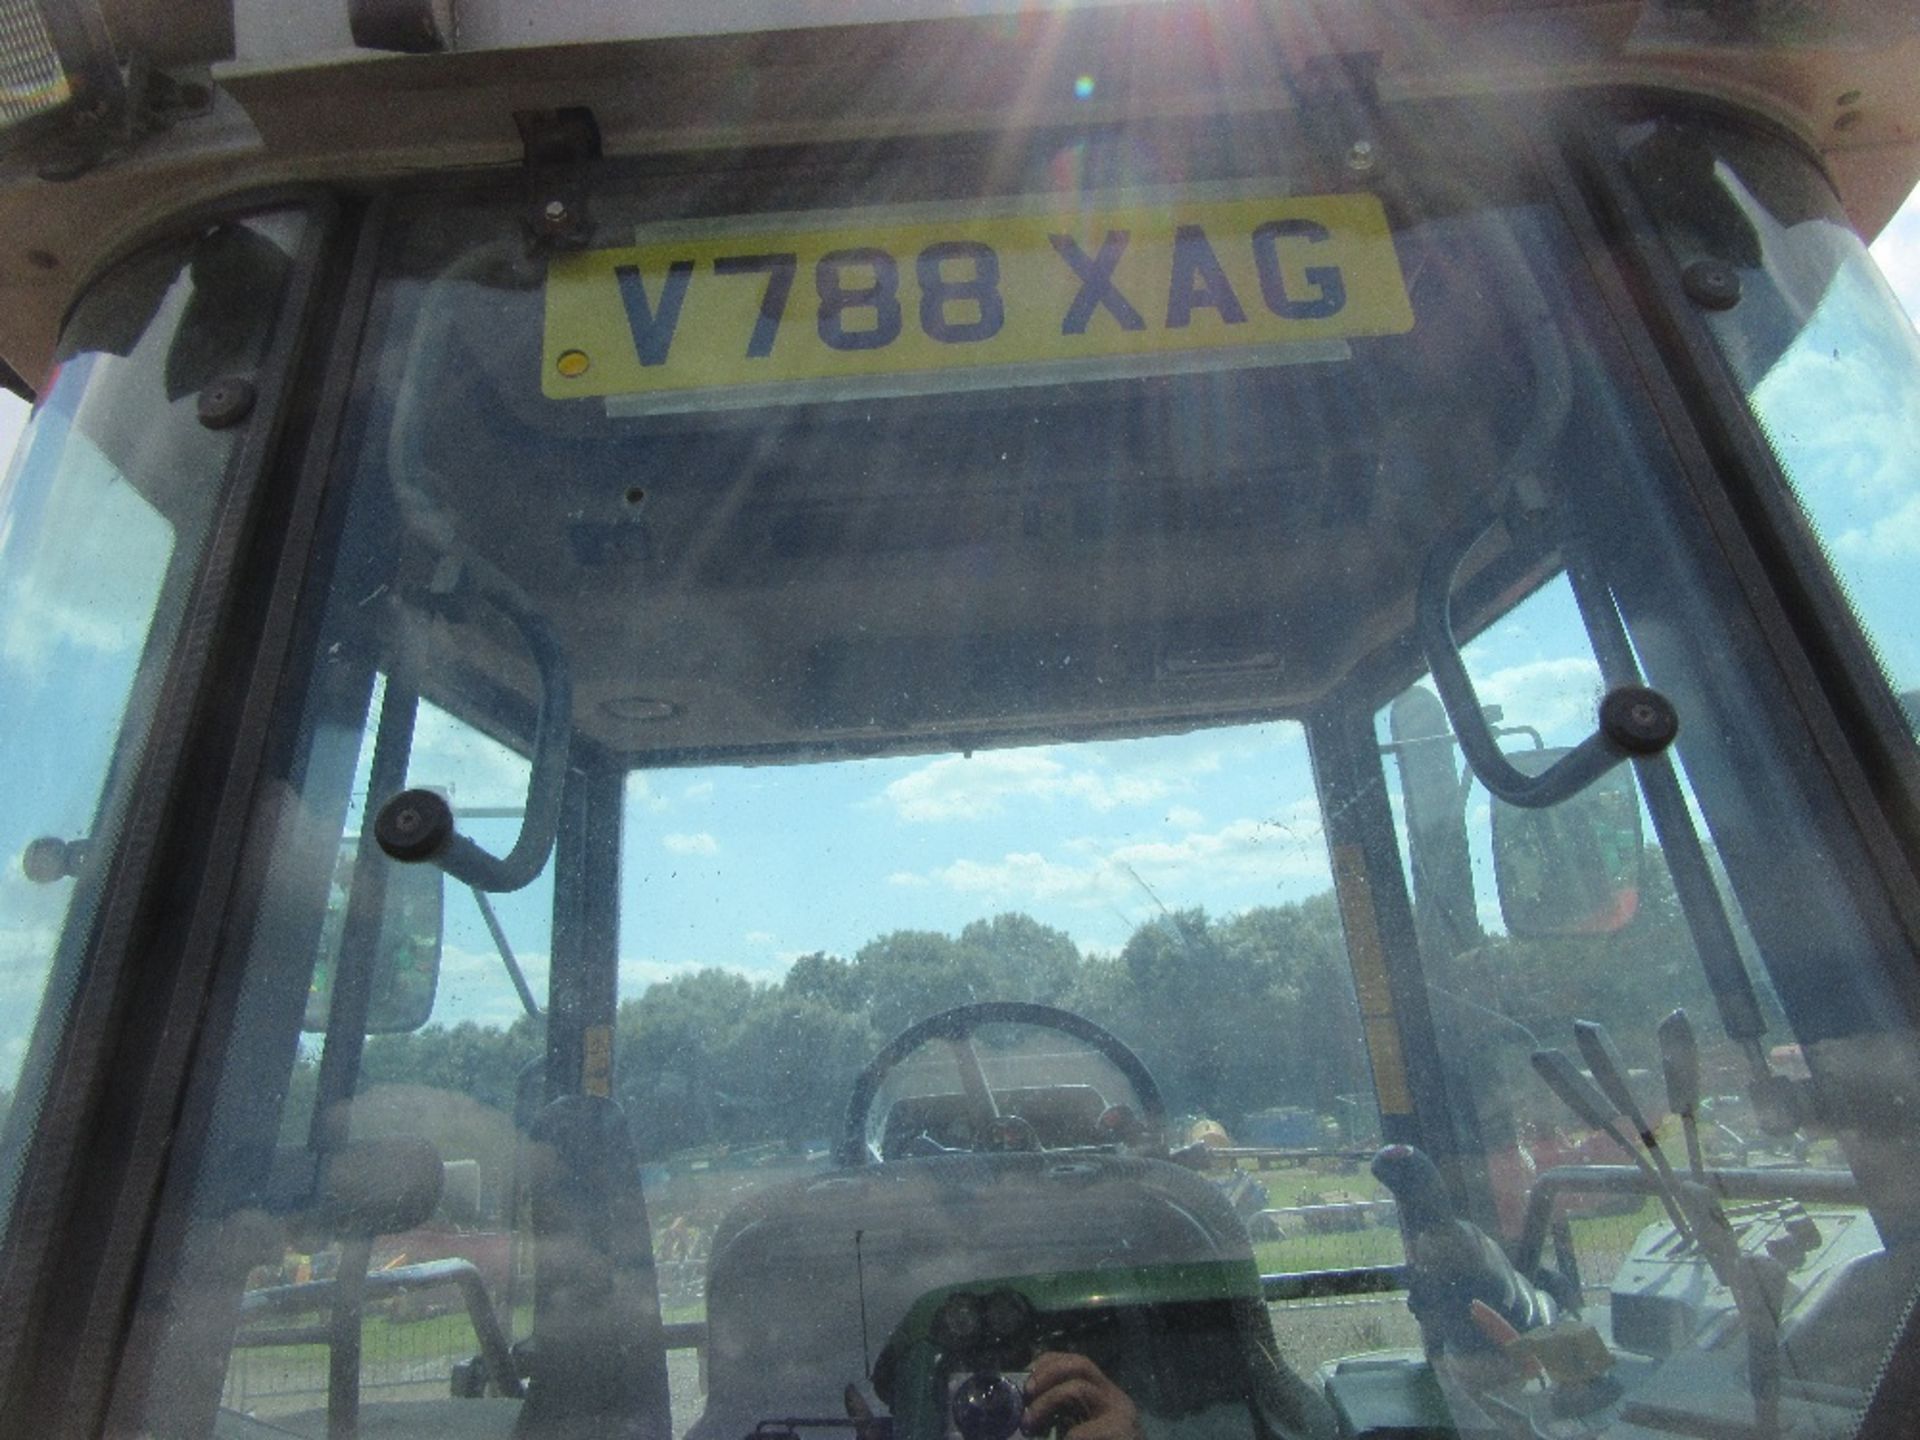 1999 Massey Ferguson 6270 Tractor. V5 will be supplied. Reg.No. V788 XAG Ser No H326015 - Image 6 of 13